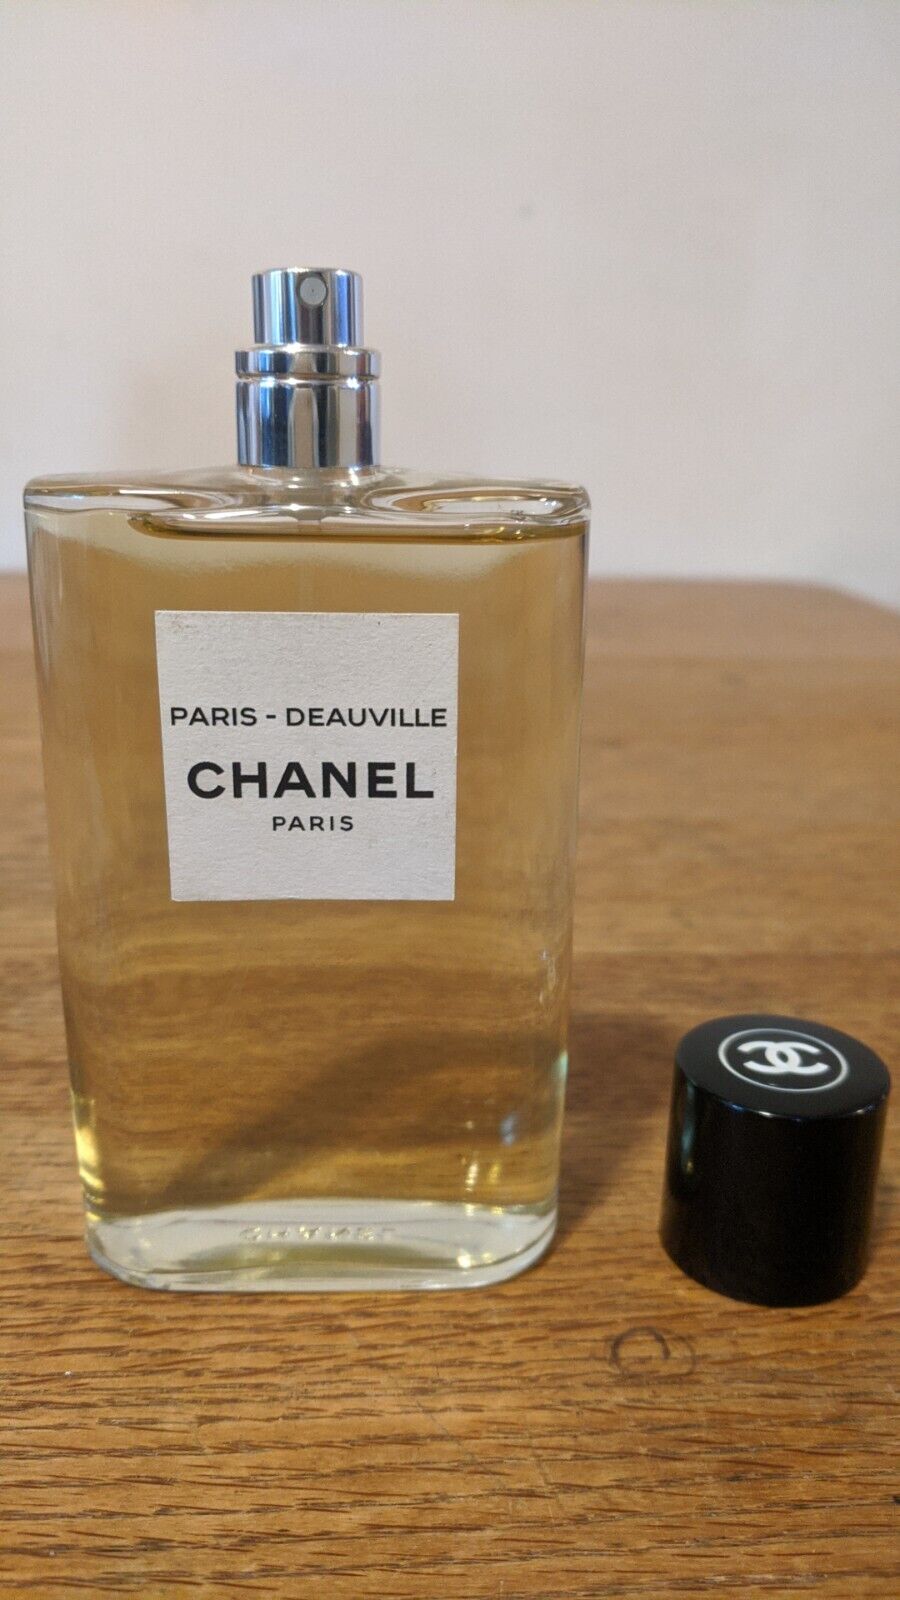 Chanel PARIS - DEAUVILLE Les Eaux de CHANEL 4.2 oz